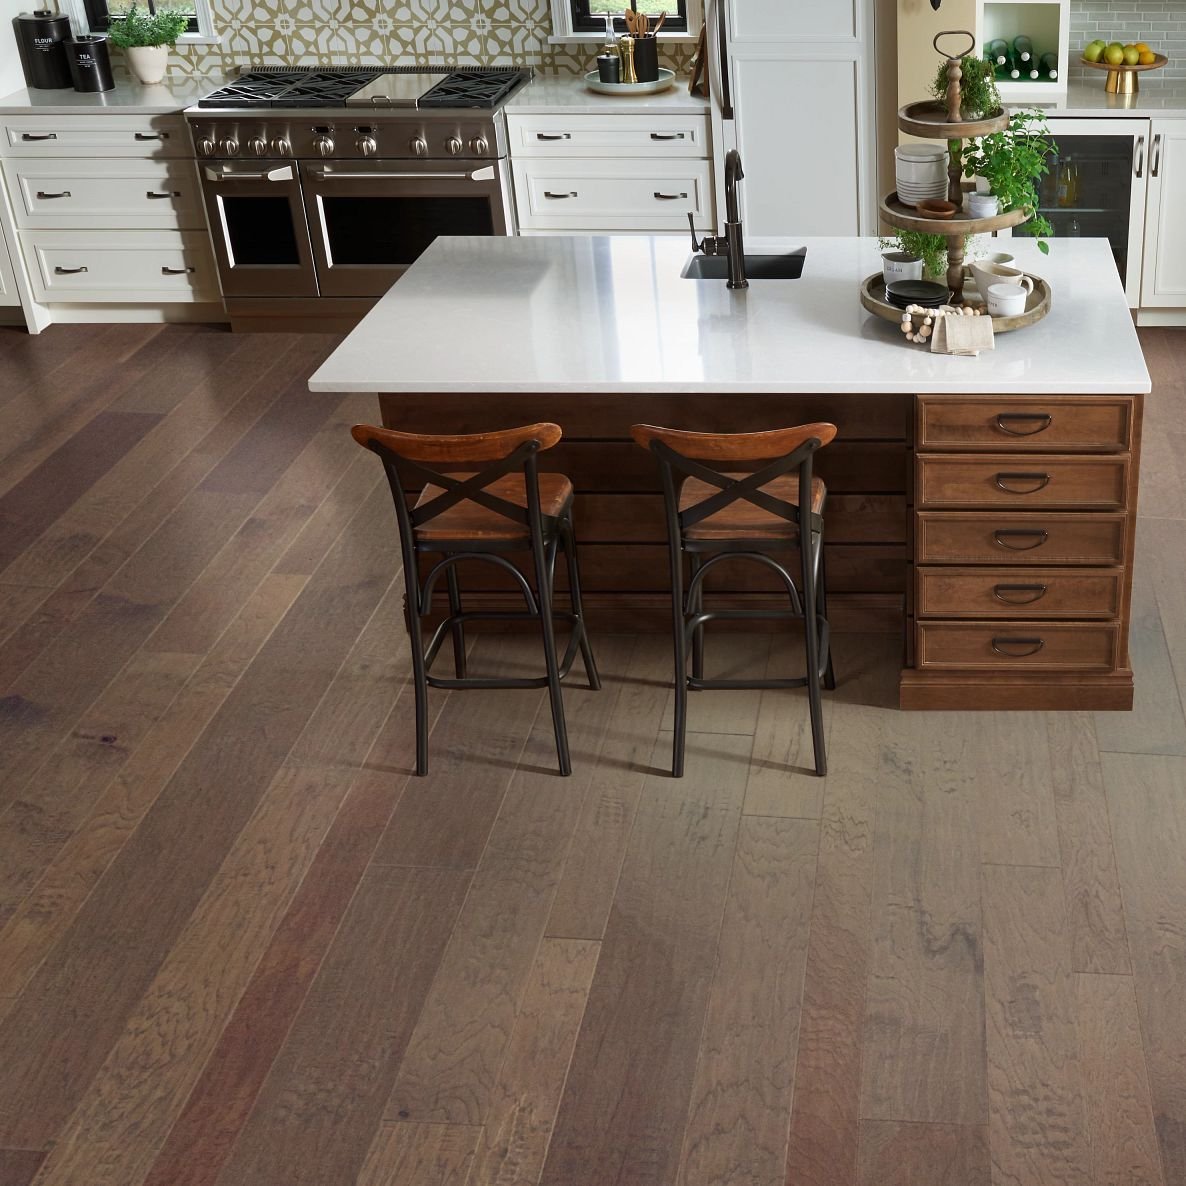 Hardwood floor in kitchen